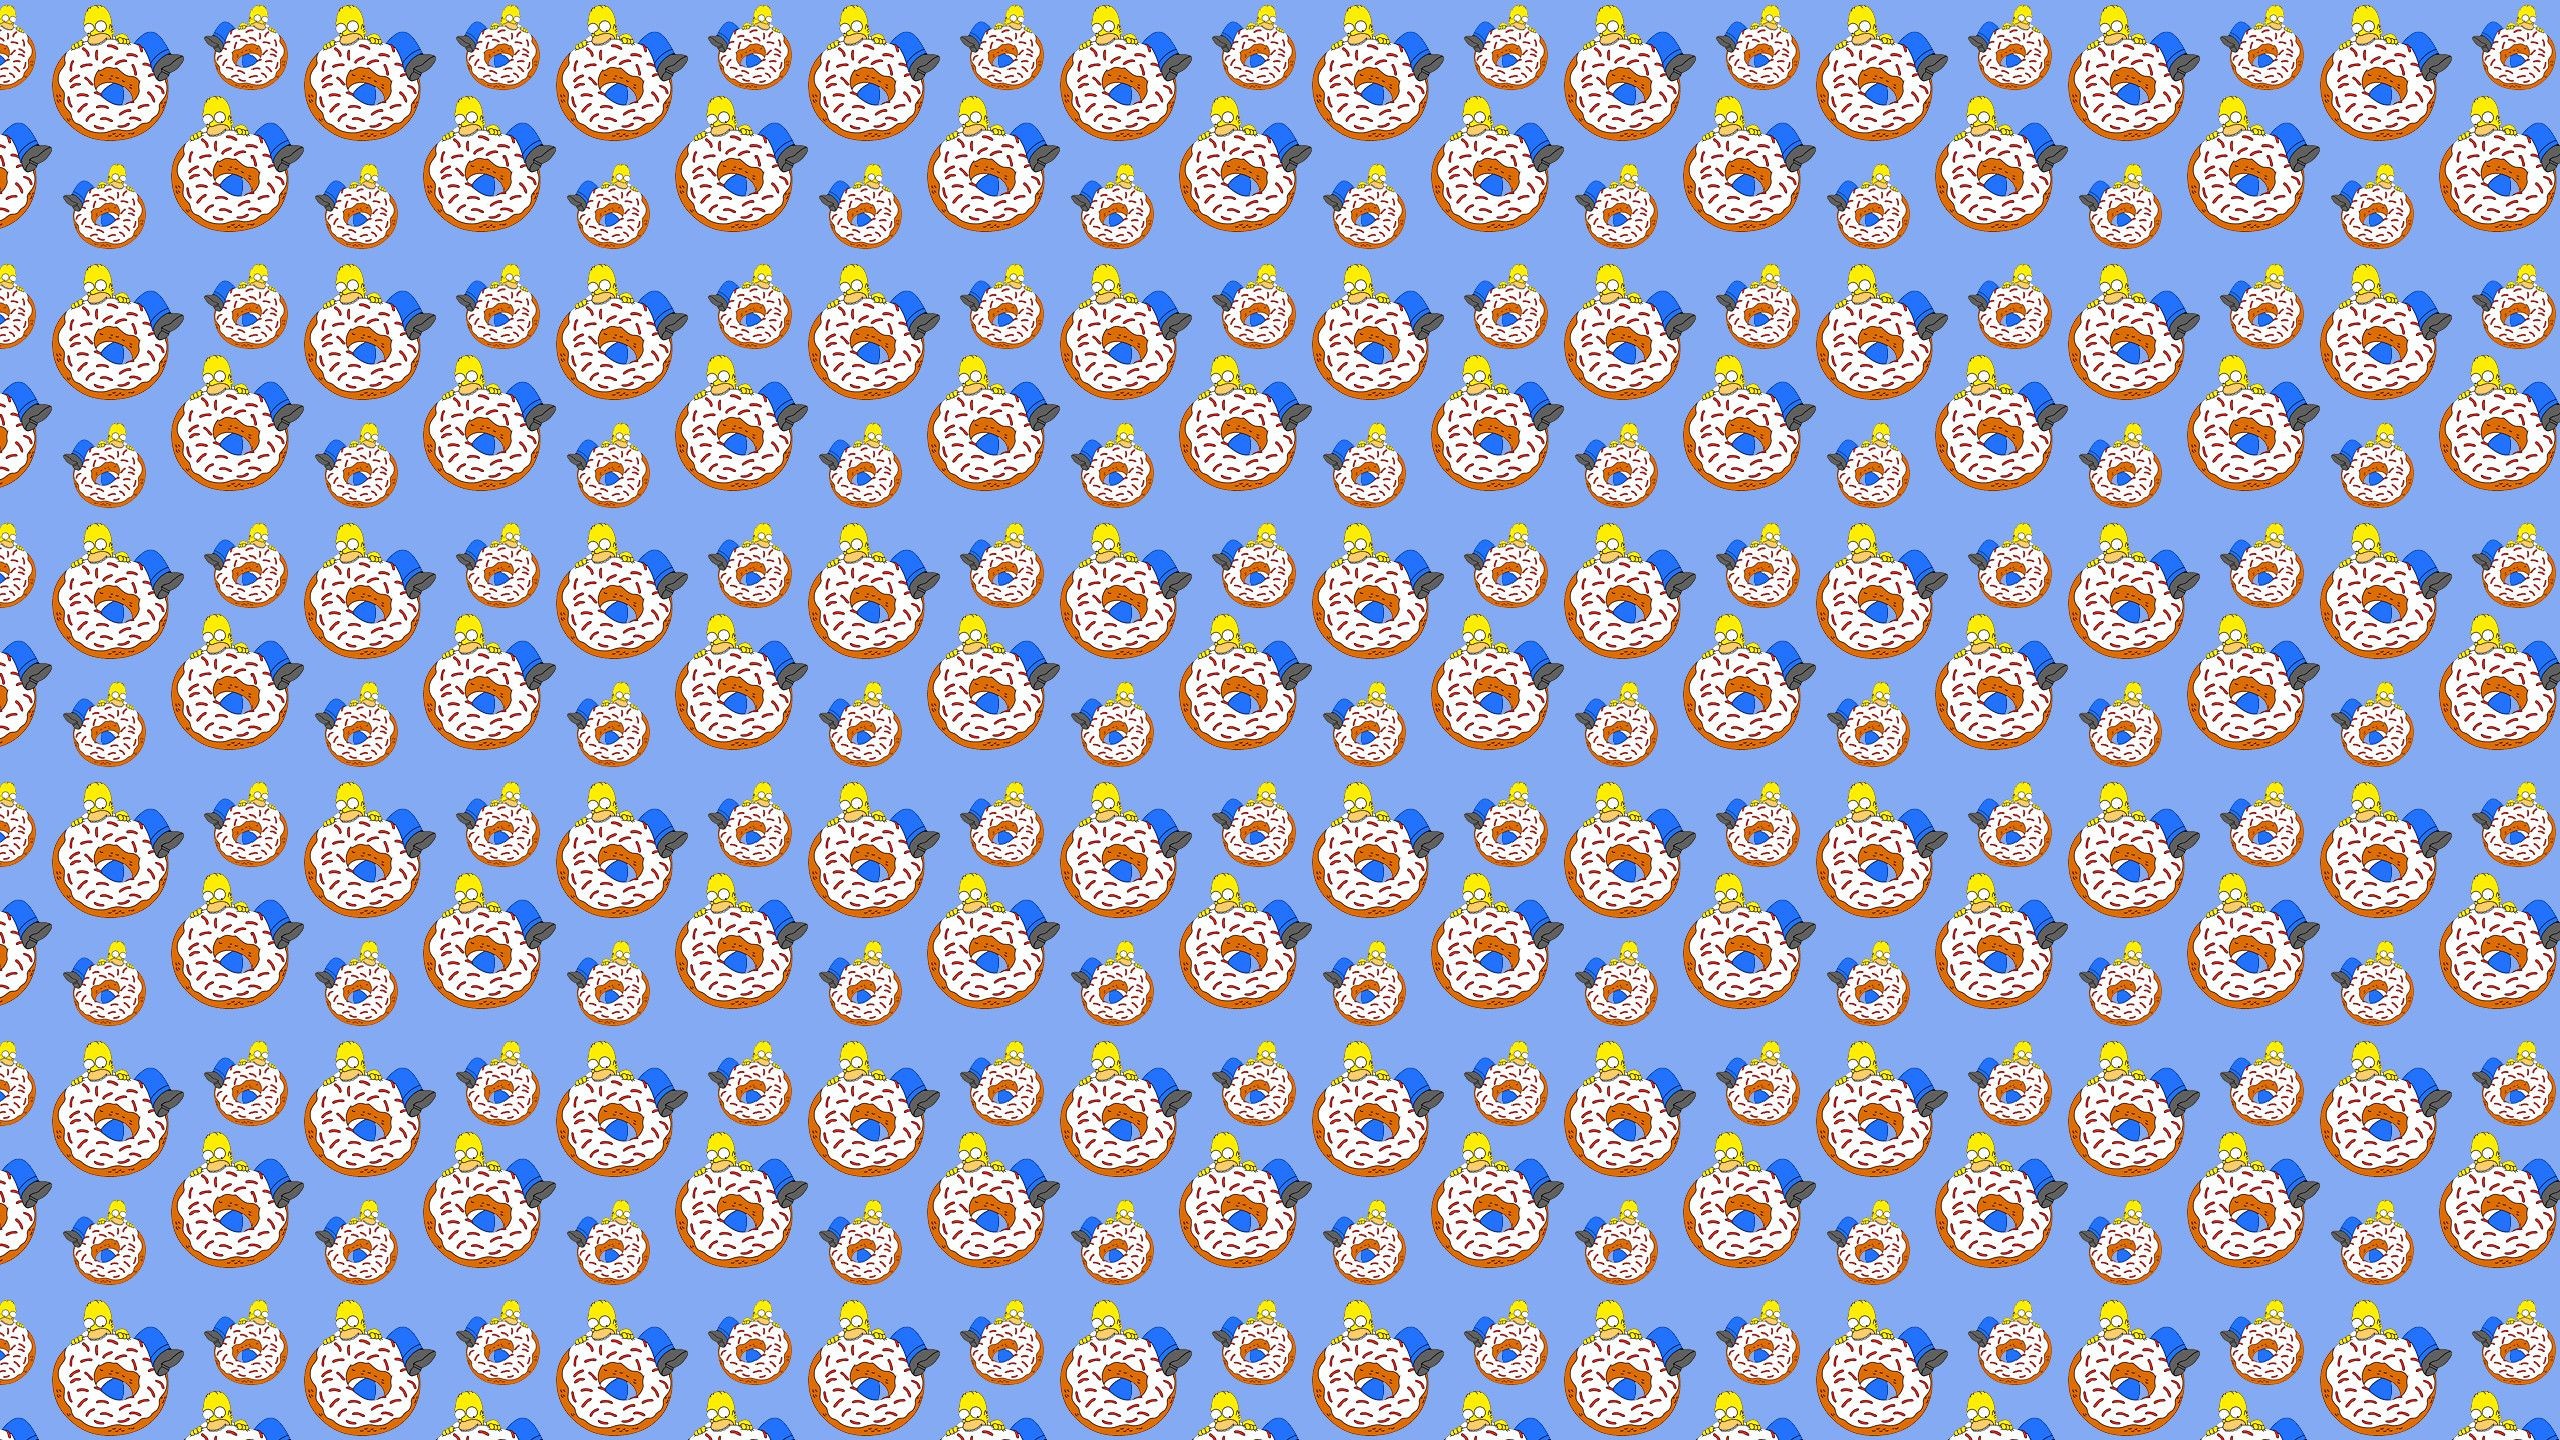 2560x1440 1440x900 Odd Future Donut Wallpaper #4GJY816 | Wall2Born.com">